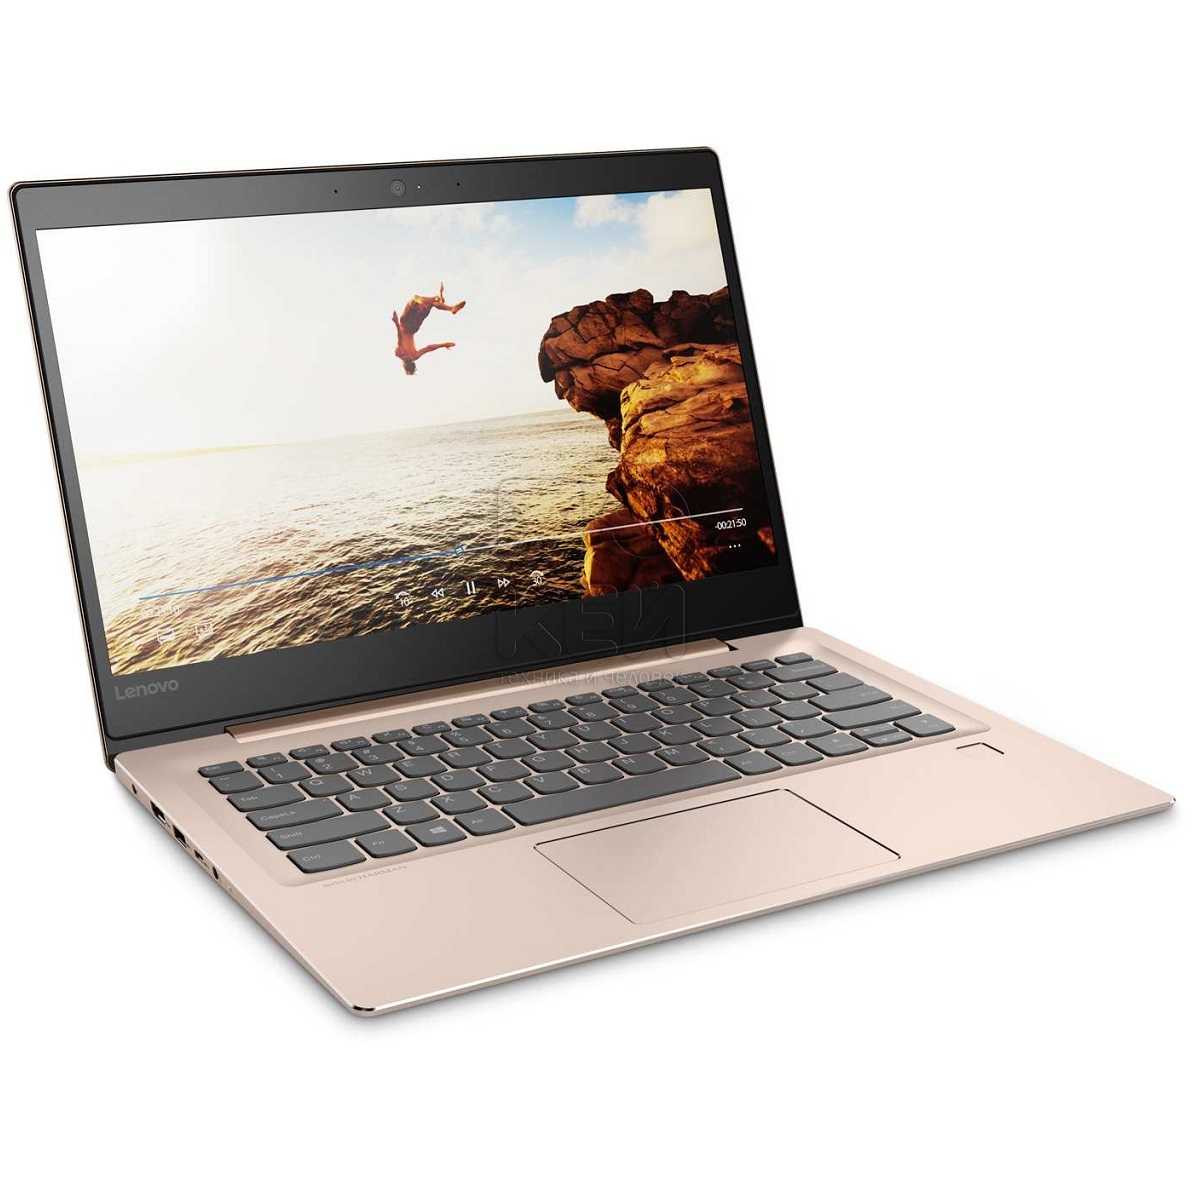 Выбор совместимого аккумулятора для ноутбука lenovo ideapad 520s series 520s-14ikb (80x200gfrk) — купить, цена и характеристики, отзывы